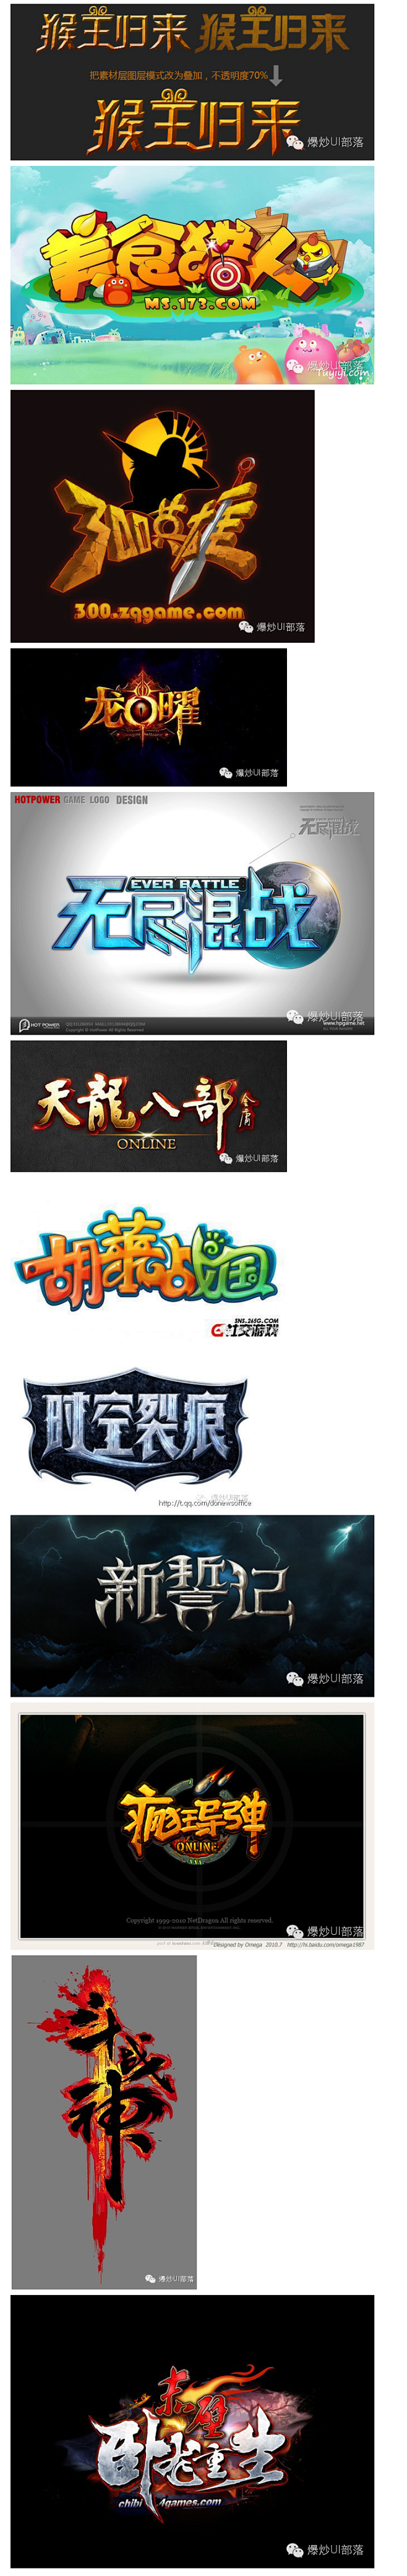 270款中文游戏logo赏析（1）一定有...